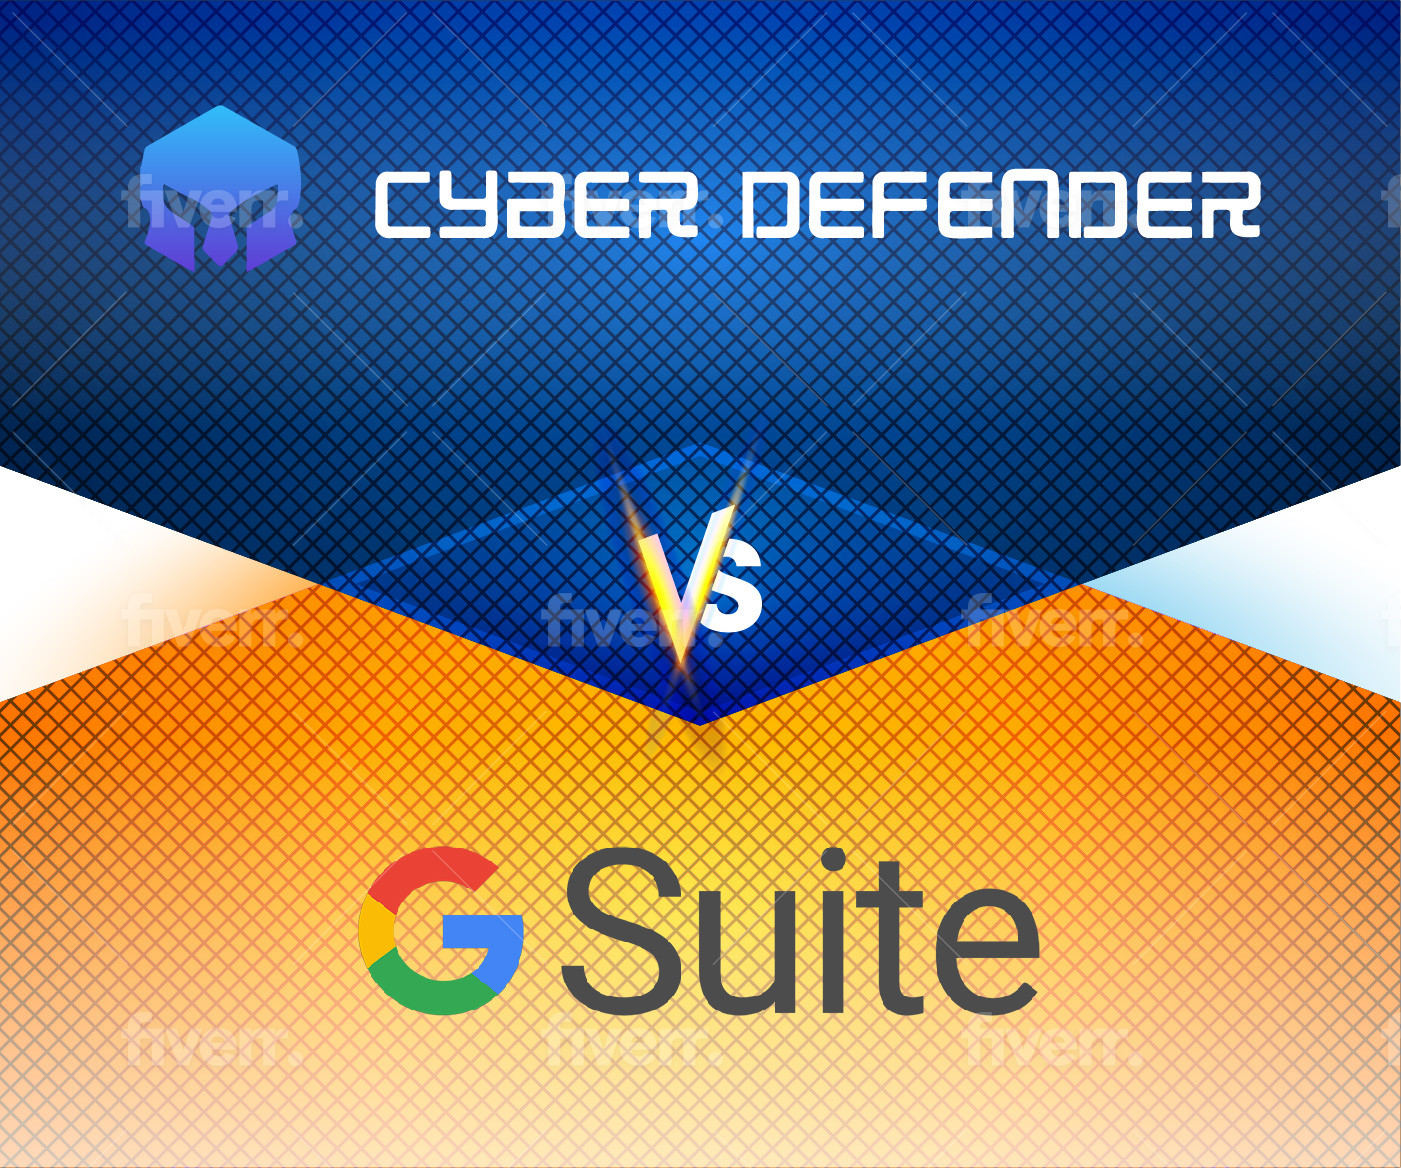 Cyber Defender_G Suite Comparison